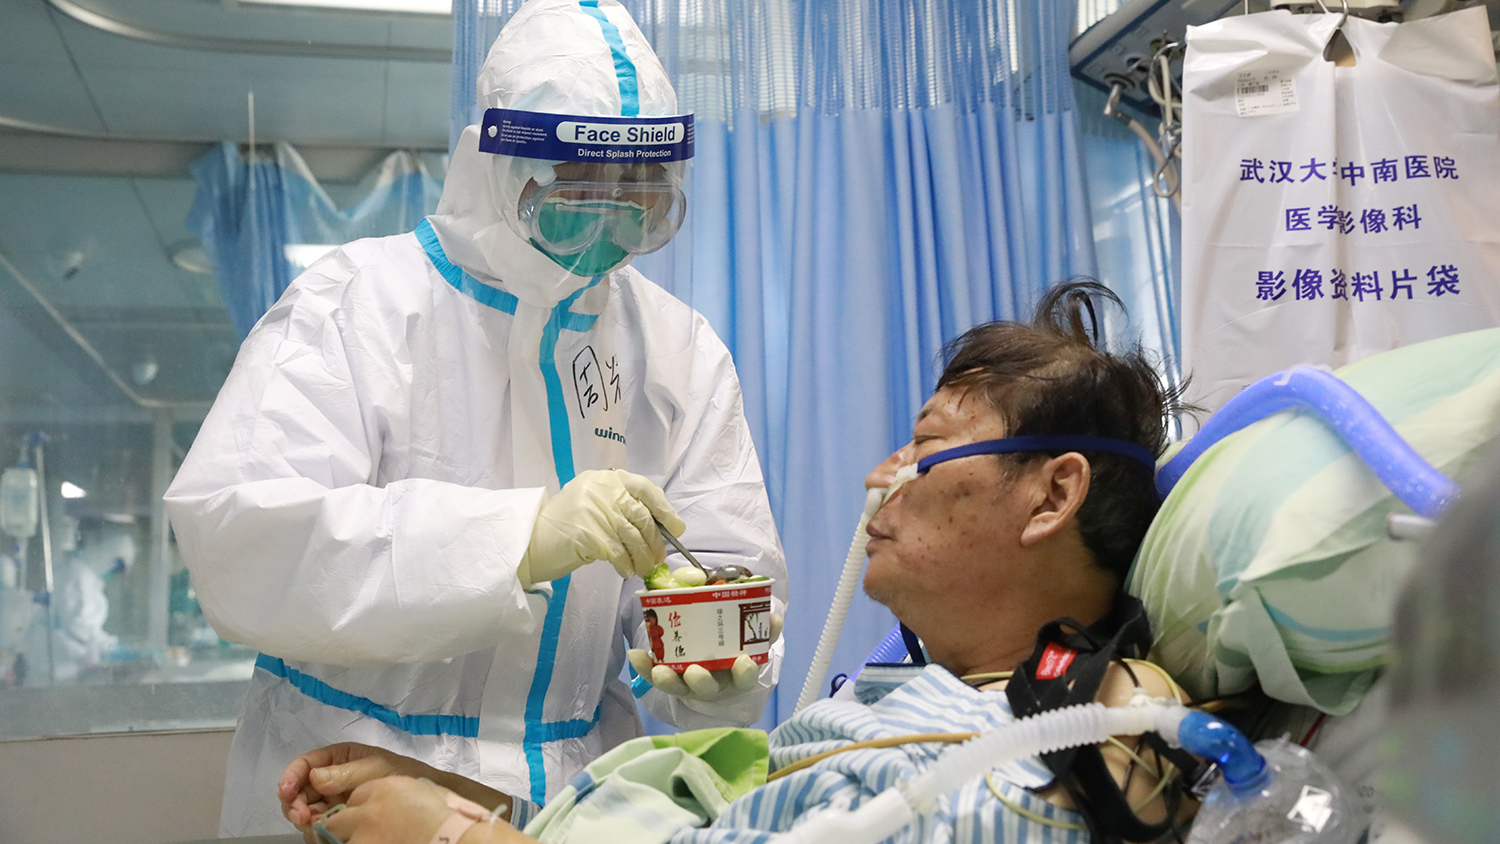 Китайские врачи: "Из-за коронавируса может почернеть кожа"